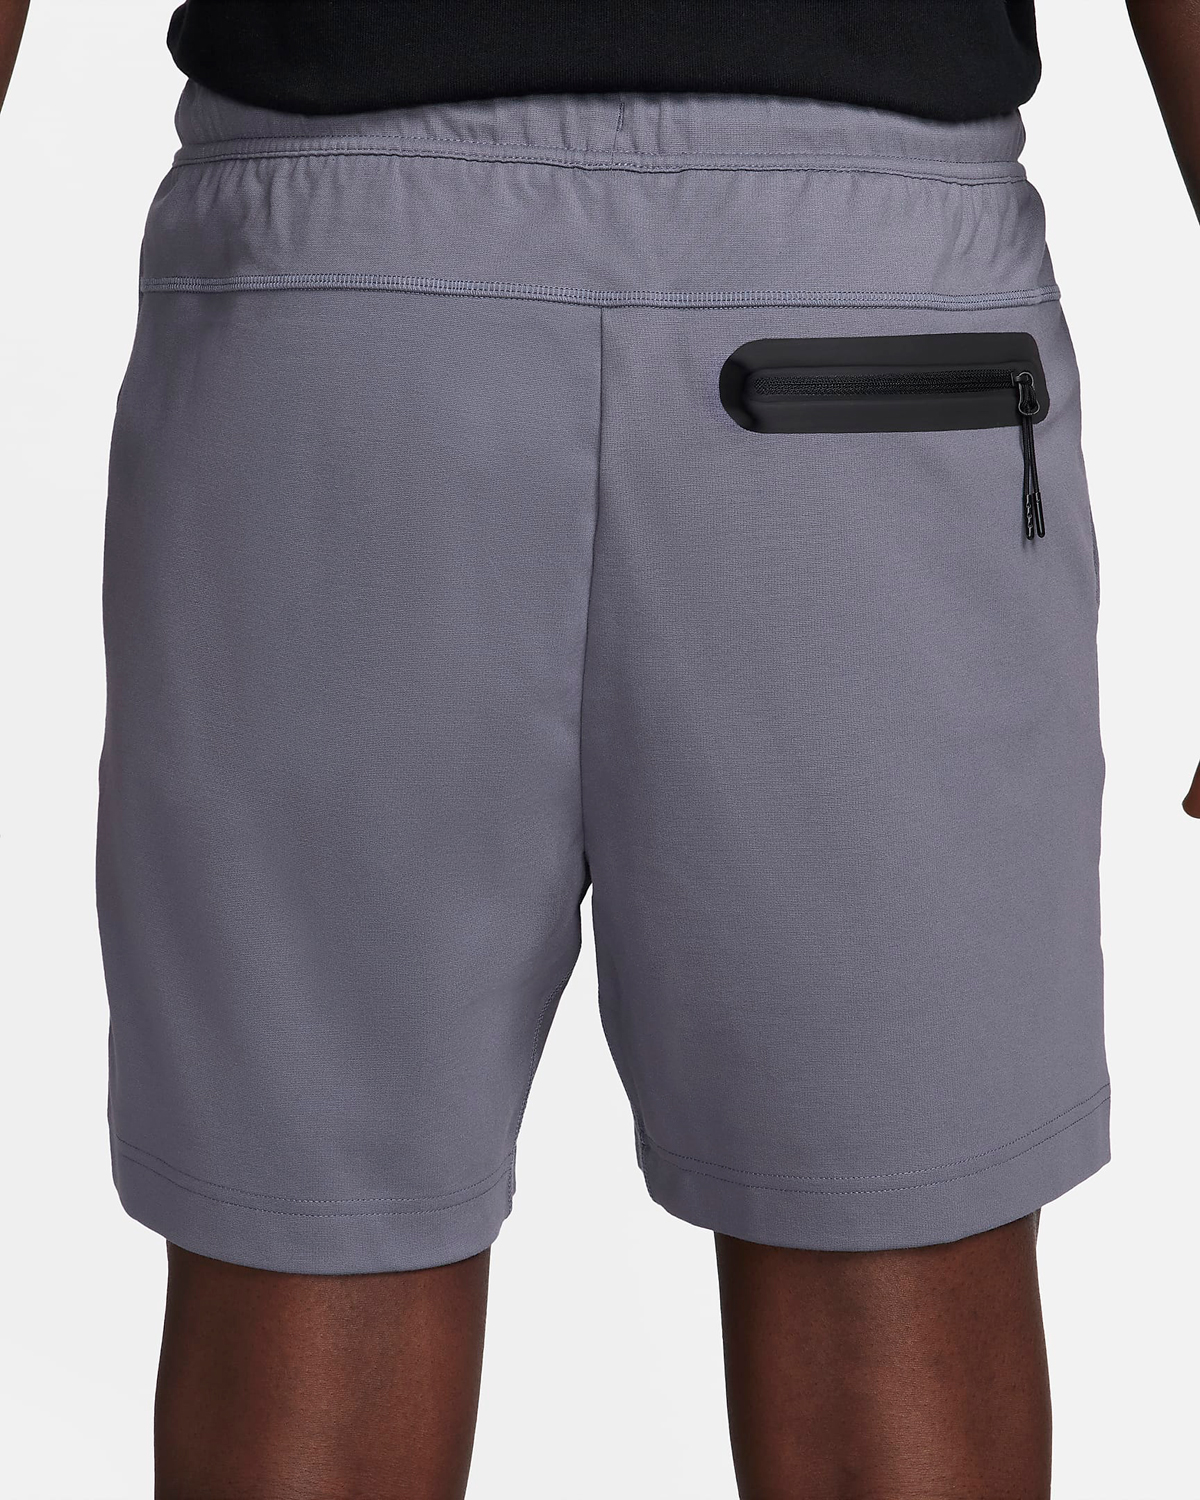 Nike-Tech-Knit-Lightweight-Shorts-Light-Carbon-2